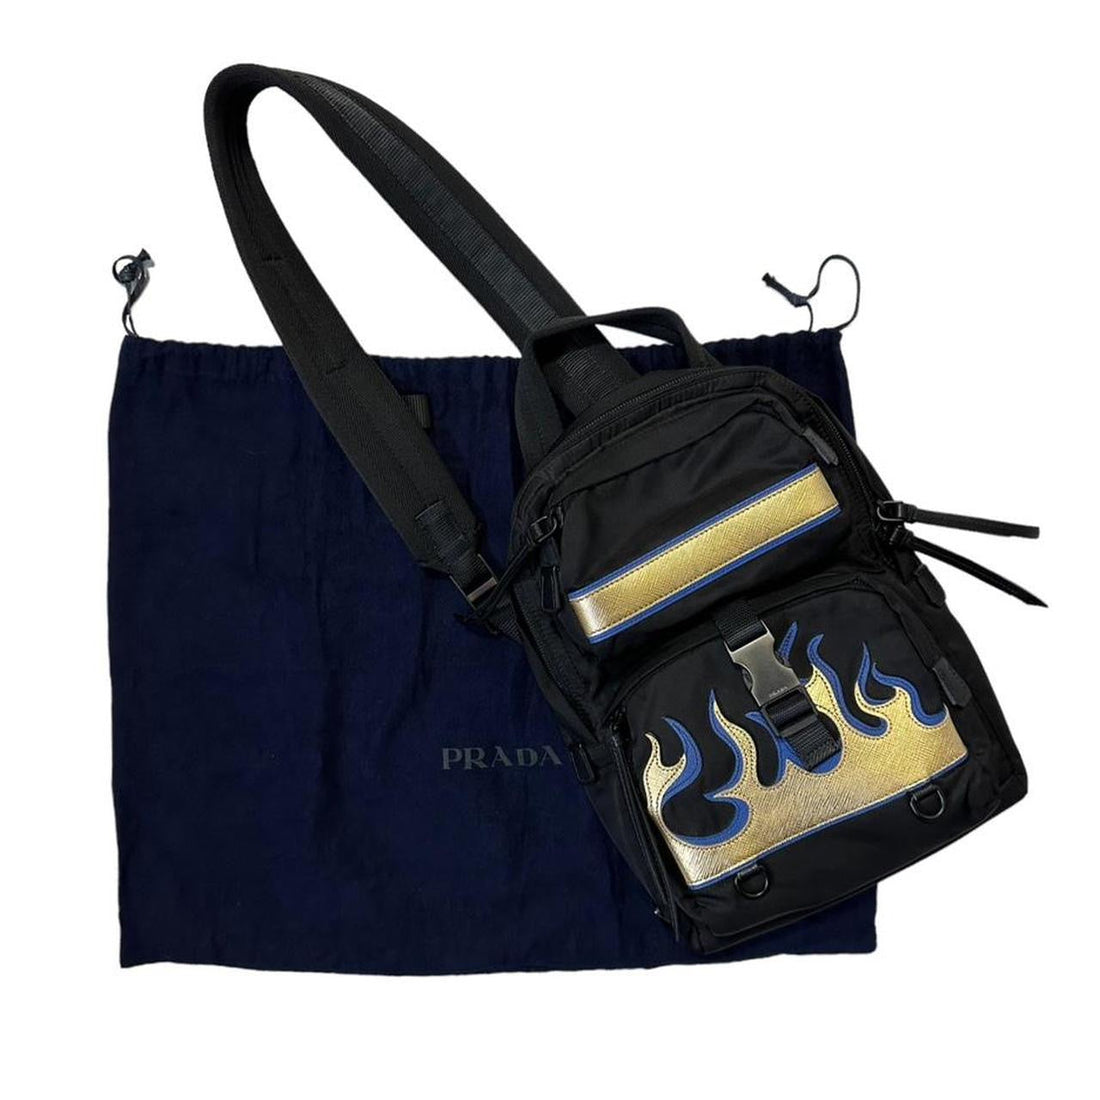 Prada Flame Saffiano Leather Sling Bag